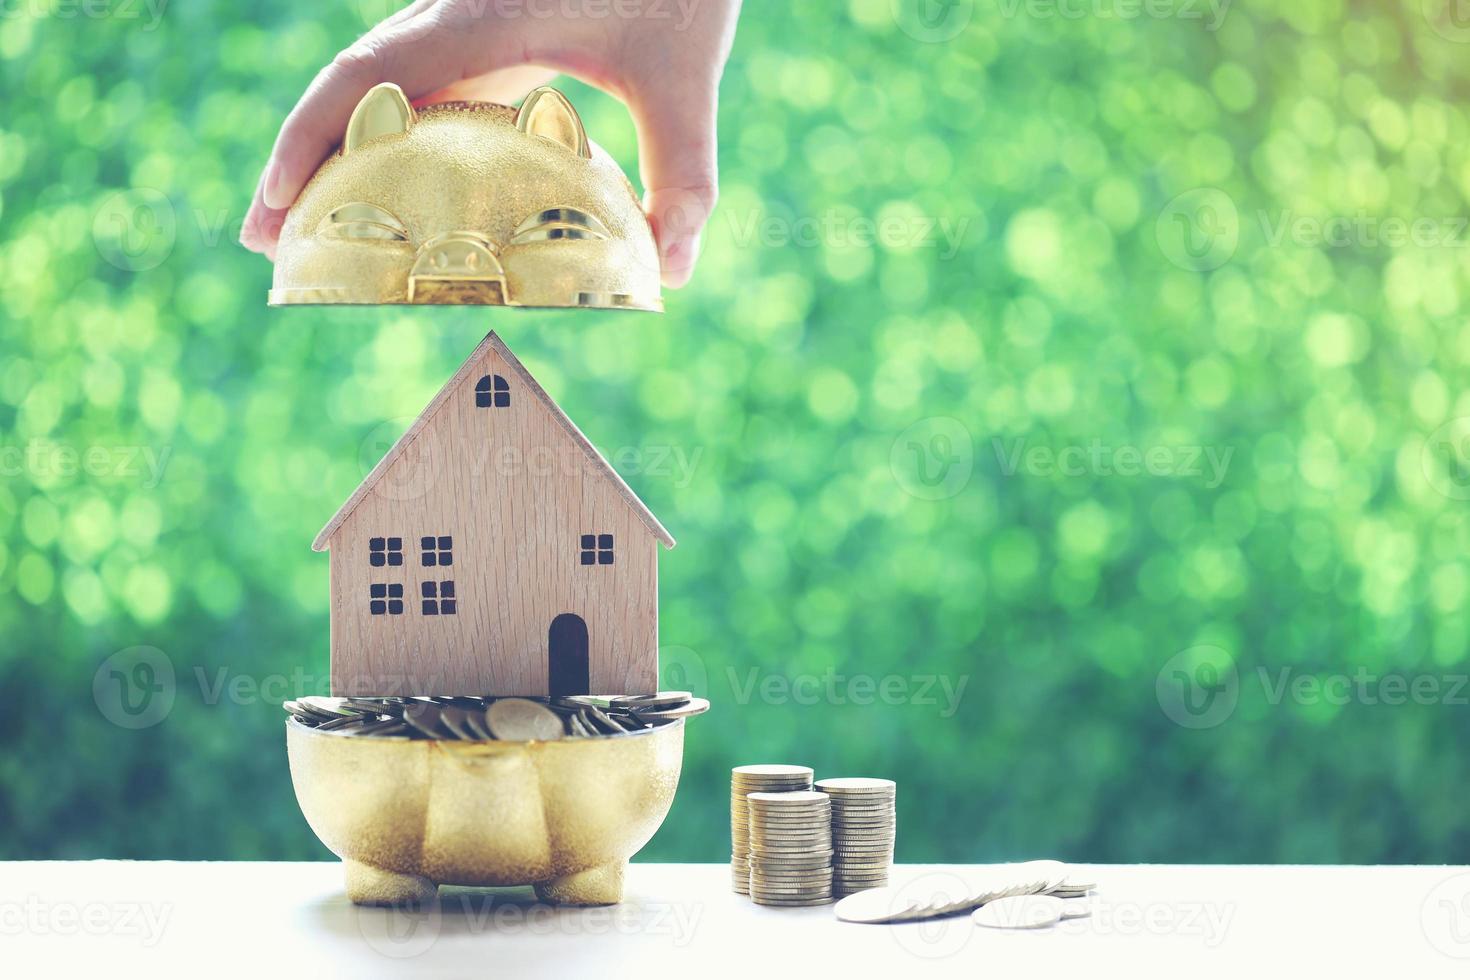 pilha de moedas em um cofrinho dourado com uma casa modelo em um fundo verde natural foto